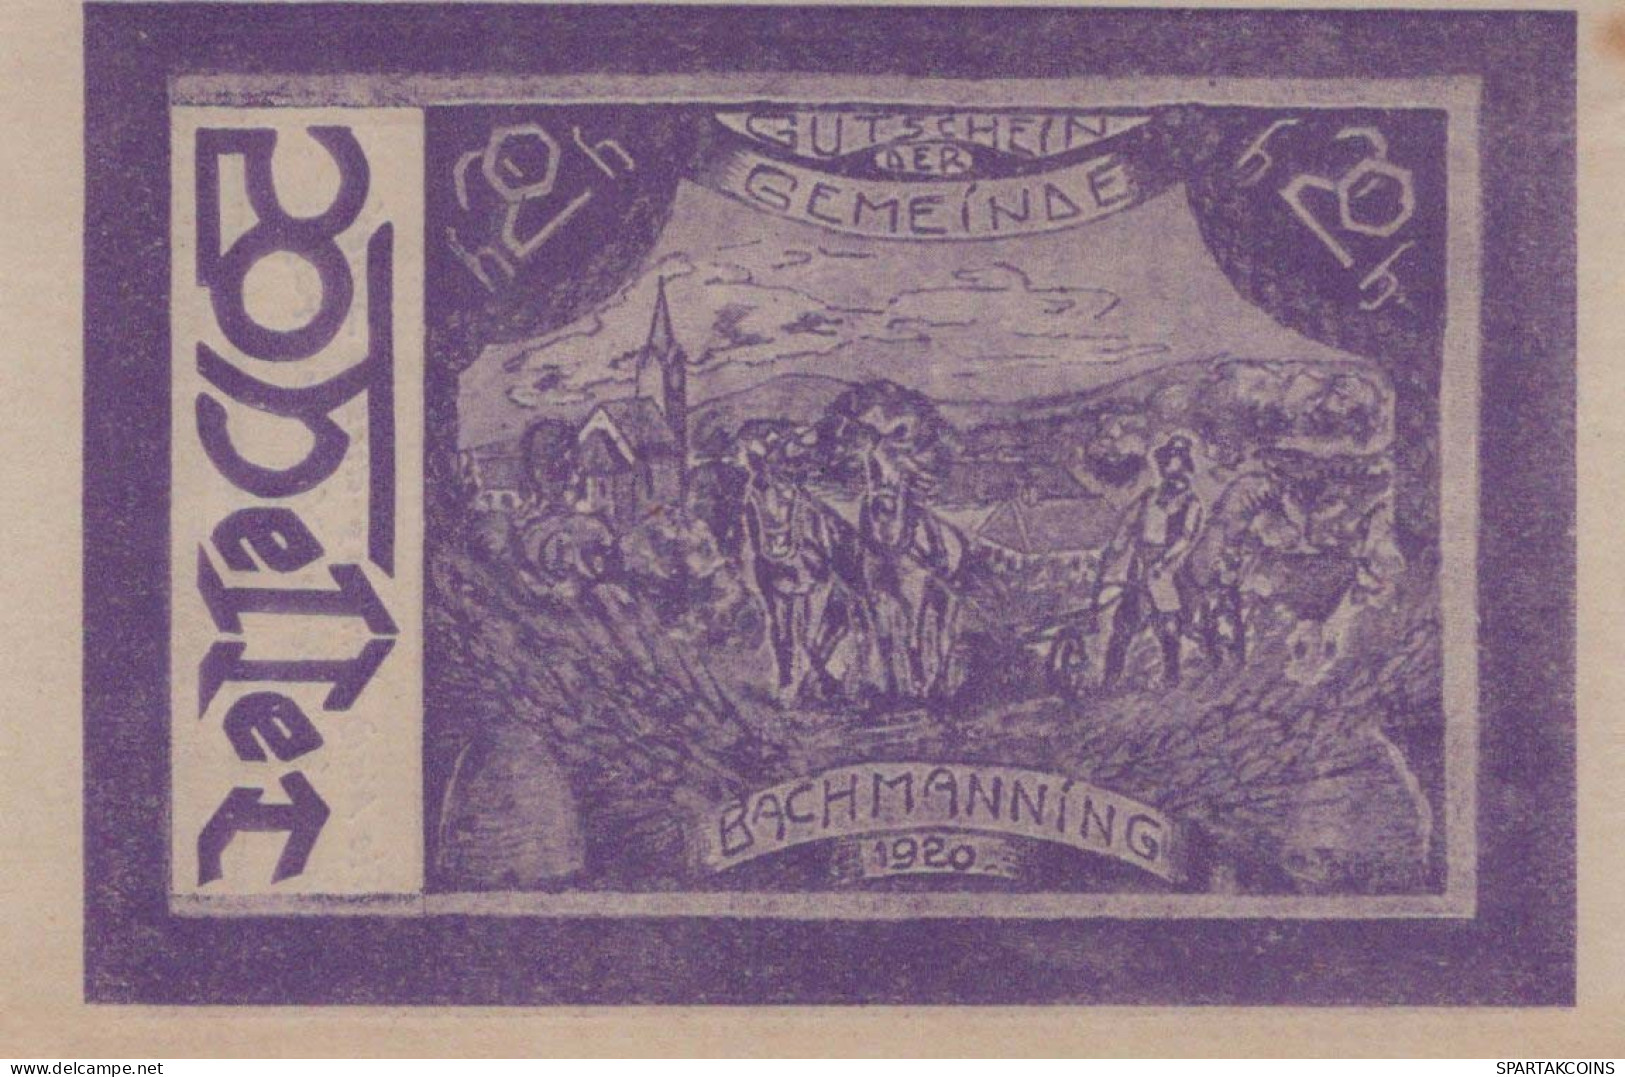 20 HELLER 1920 Stadt BACHMANNING Oberösterreich Österreich UNC Österreich Notgeld #PJ211 - [11] Emisiones Locales